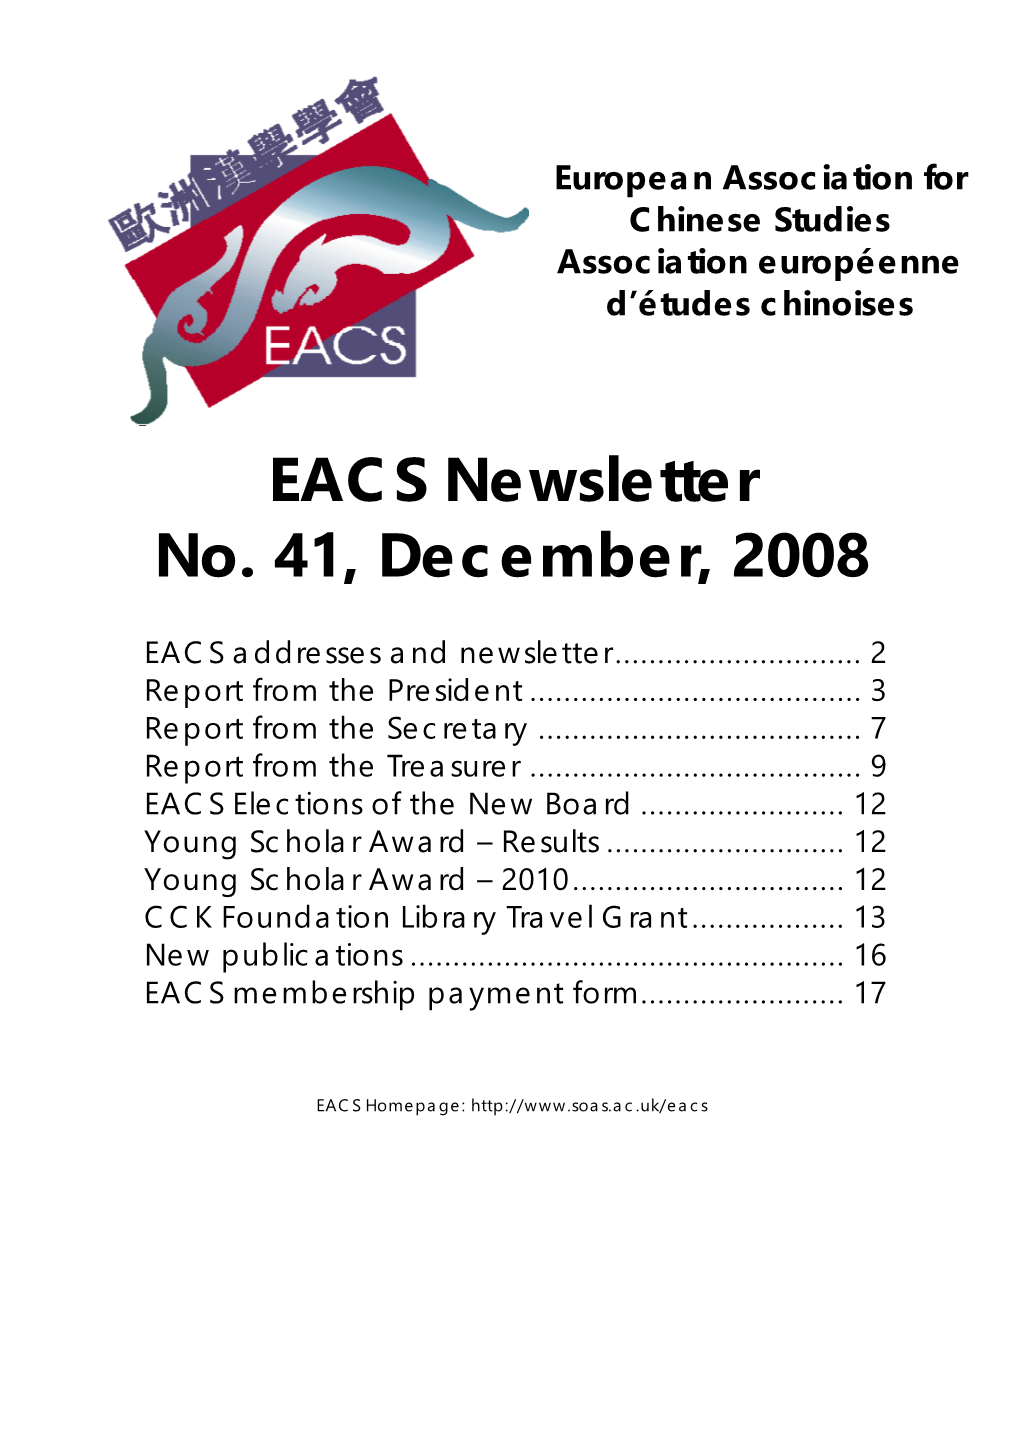 EACS Newsletter No. 41, December, 2008